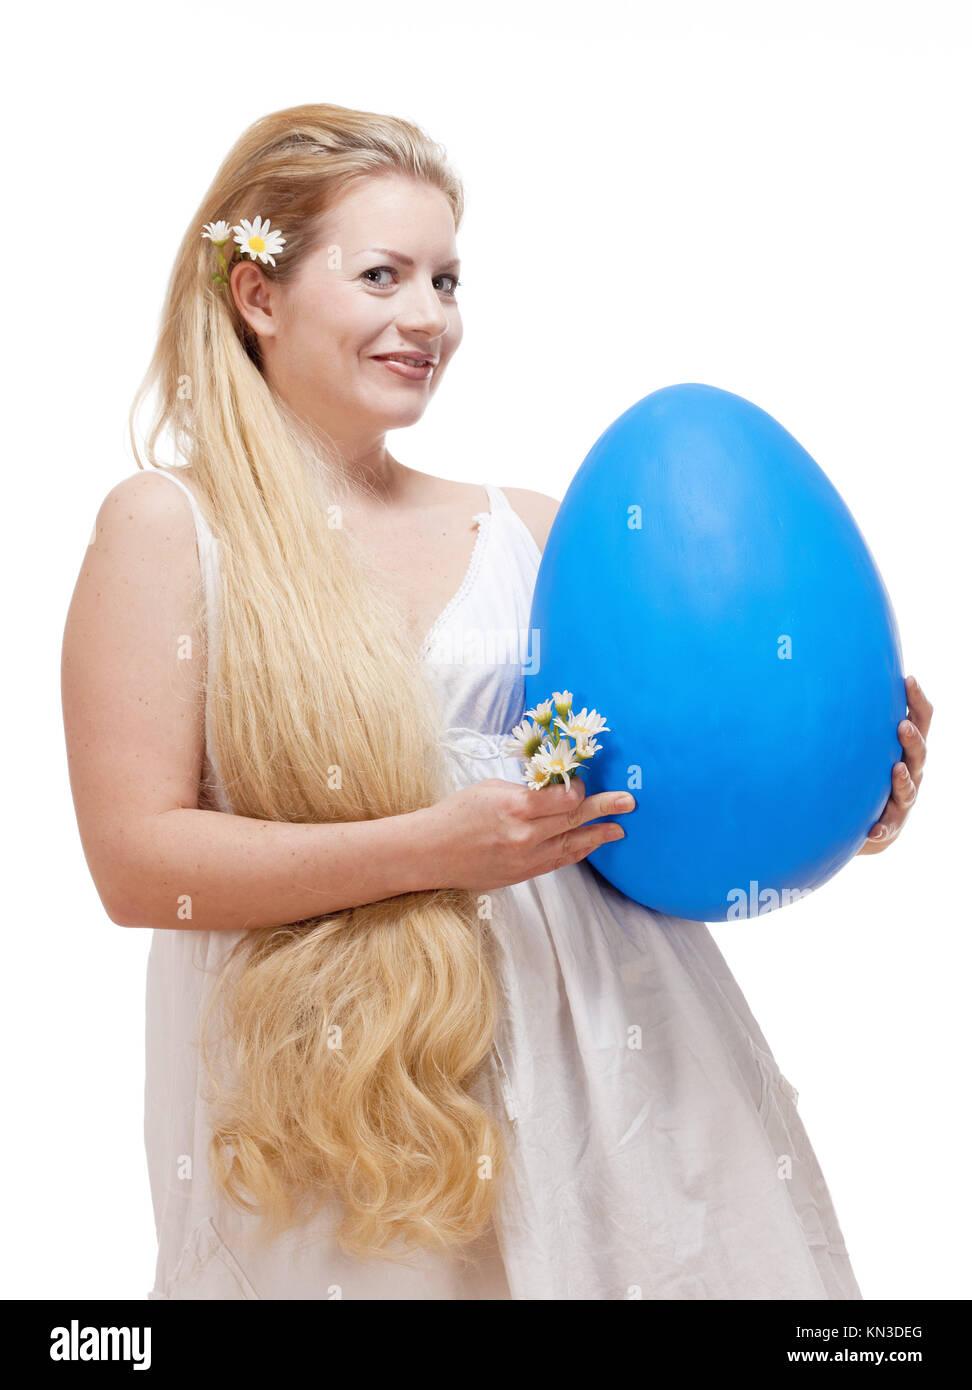 Ostern - junge Frau mit langen blonden Haaren und großen blauen Ei. Stockfoto